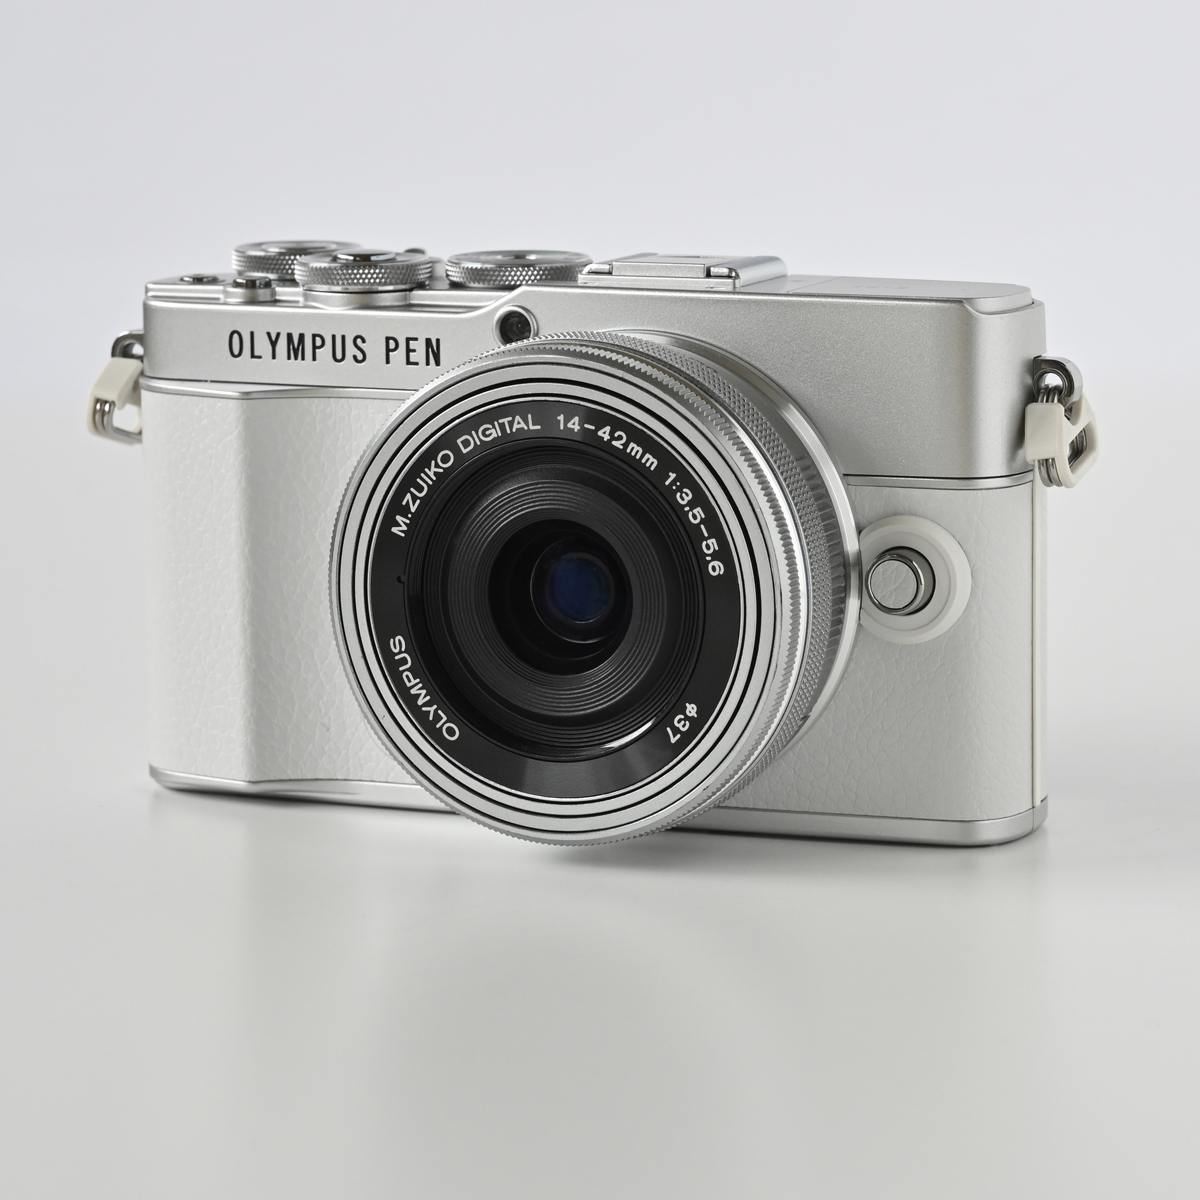 激安単価で 【限定価格】オリンパス デジタルカメラ ミラーレス mini PEN デジタルカメラ